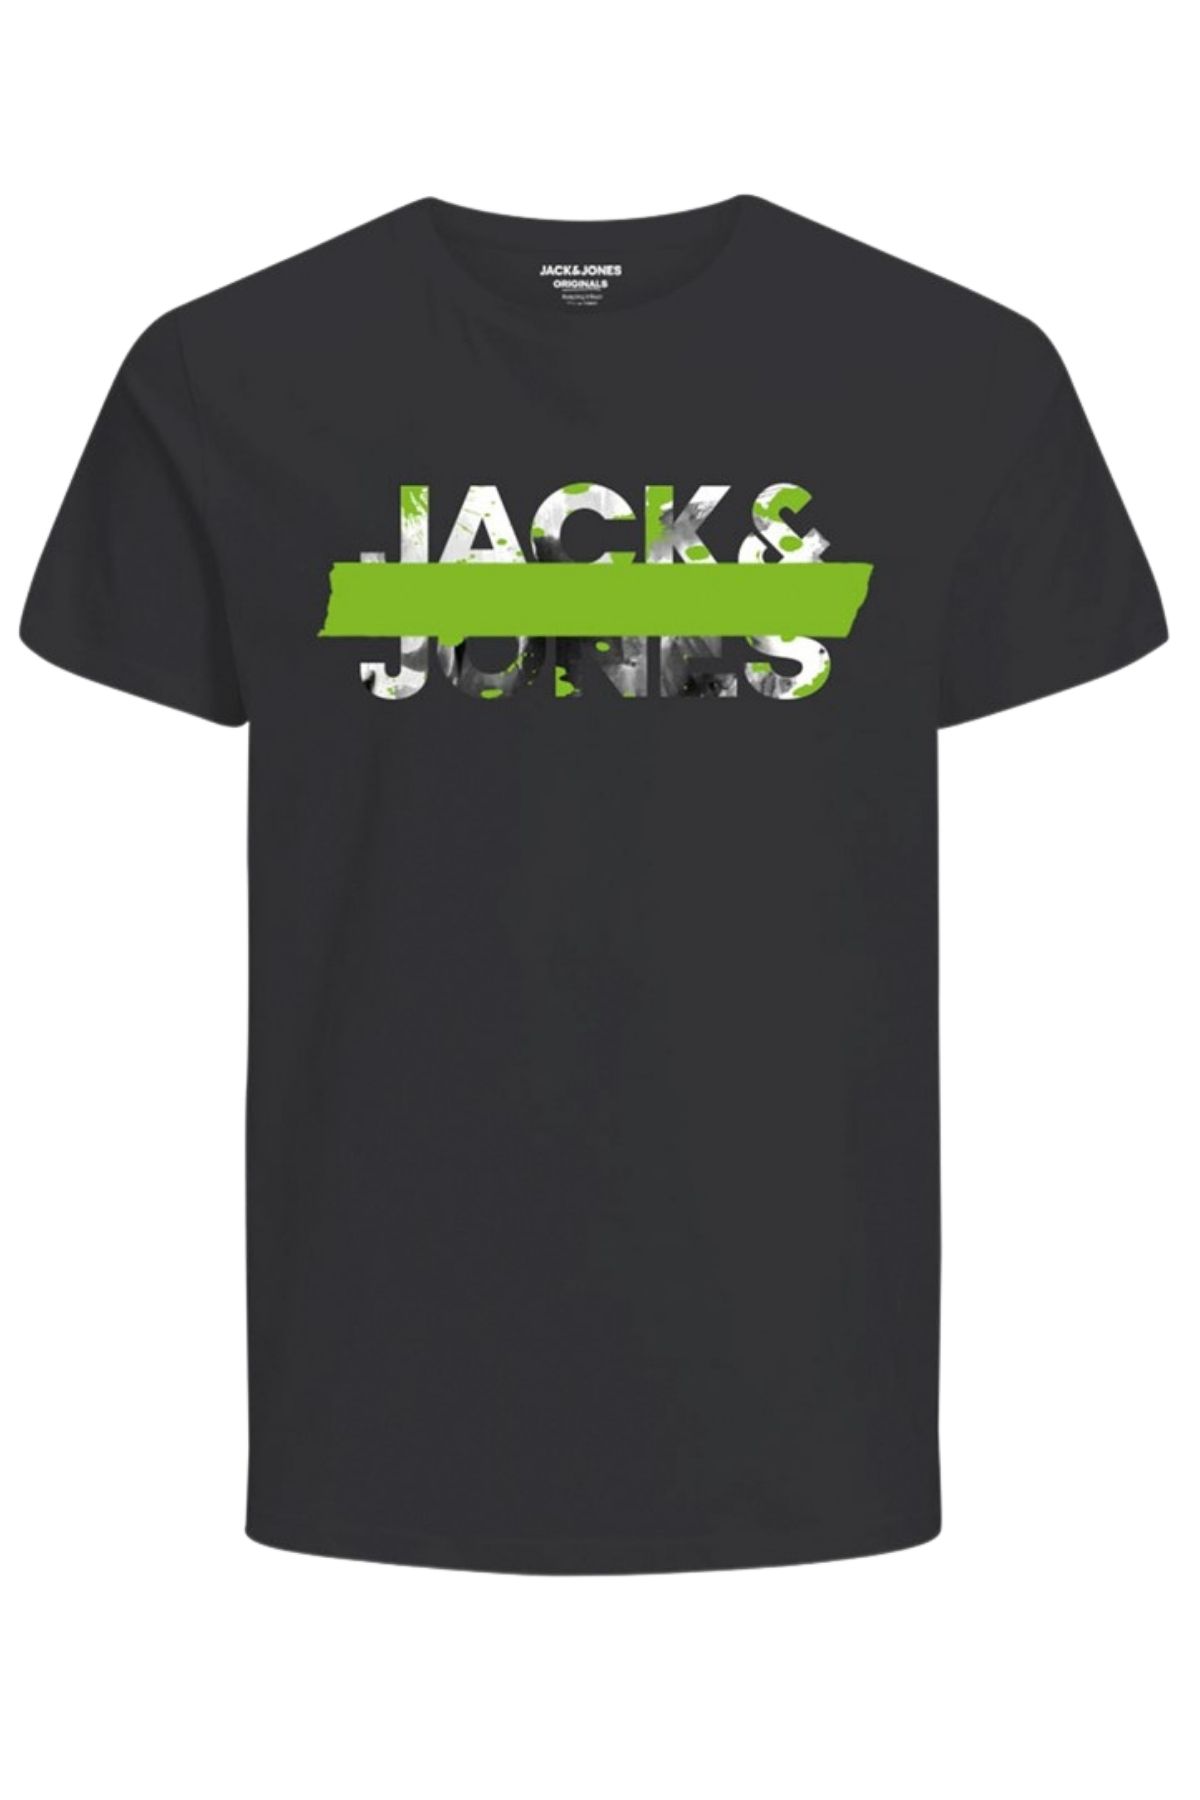 Jack & Jones Erkek Si?yah T-shirt 12191979-siyah